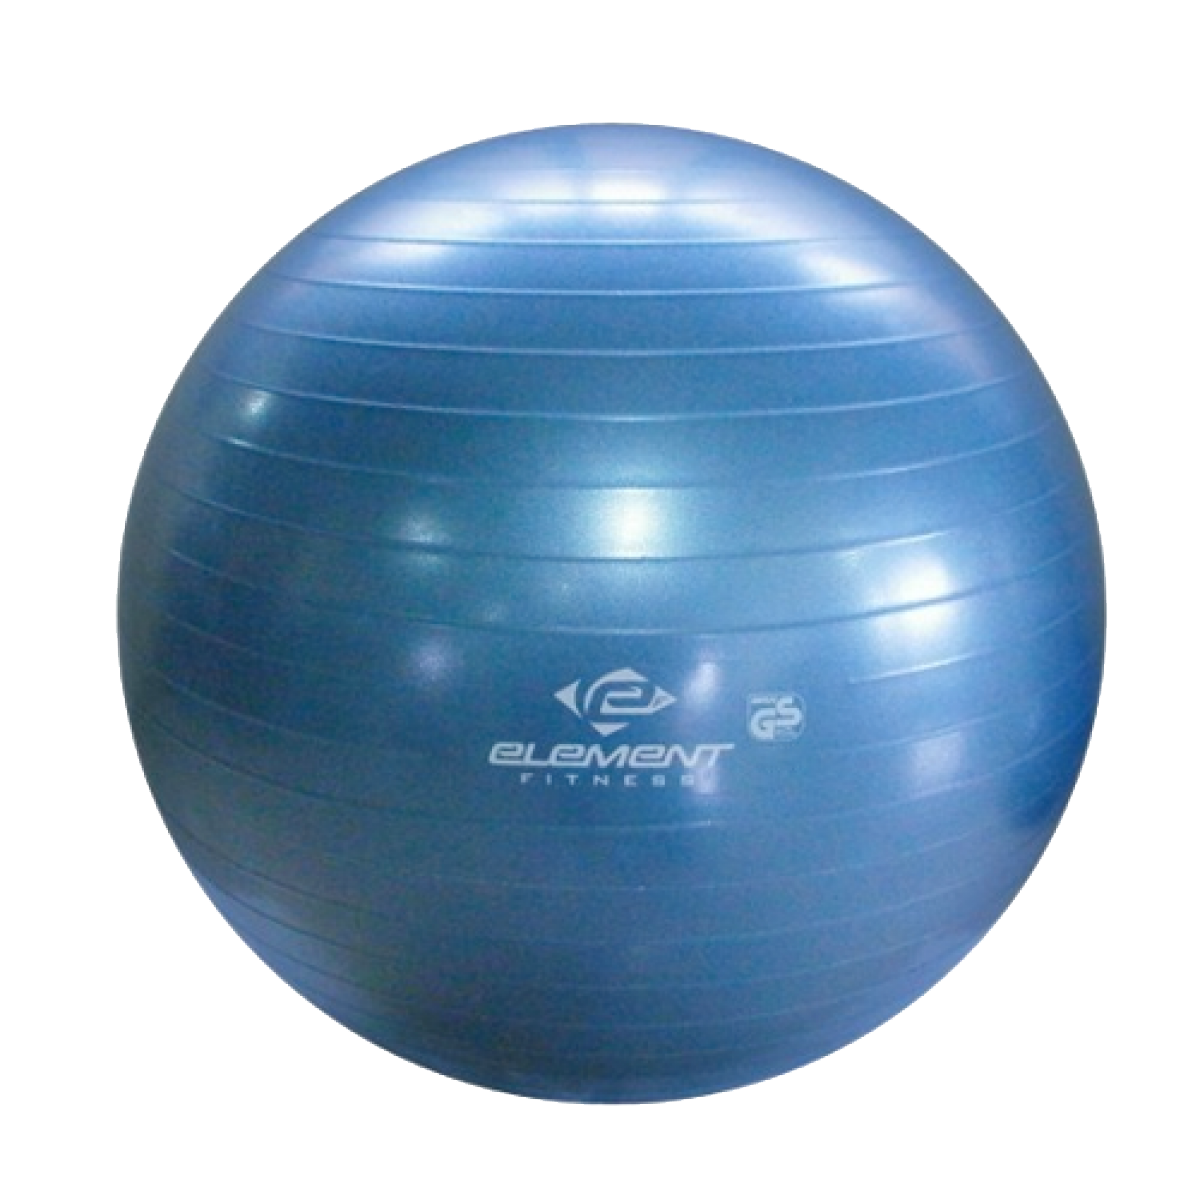 Gym Ball PNG - 15715